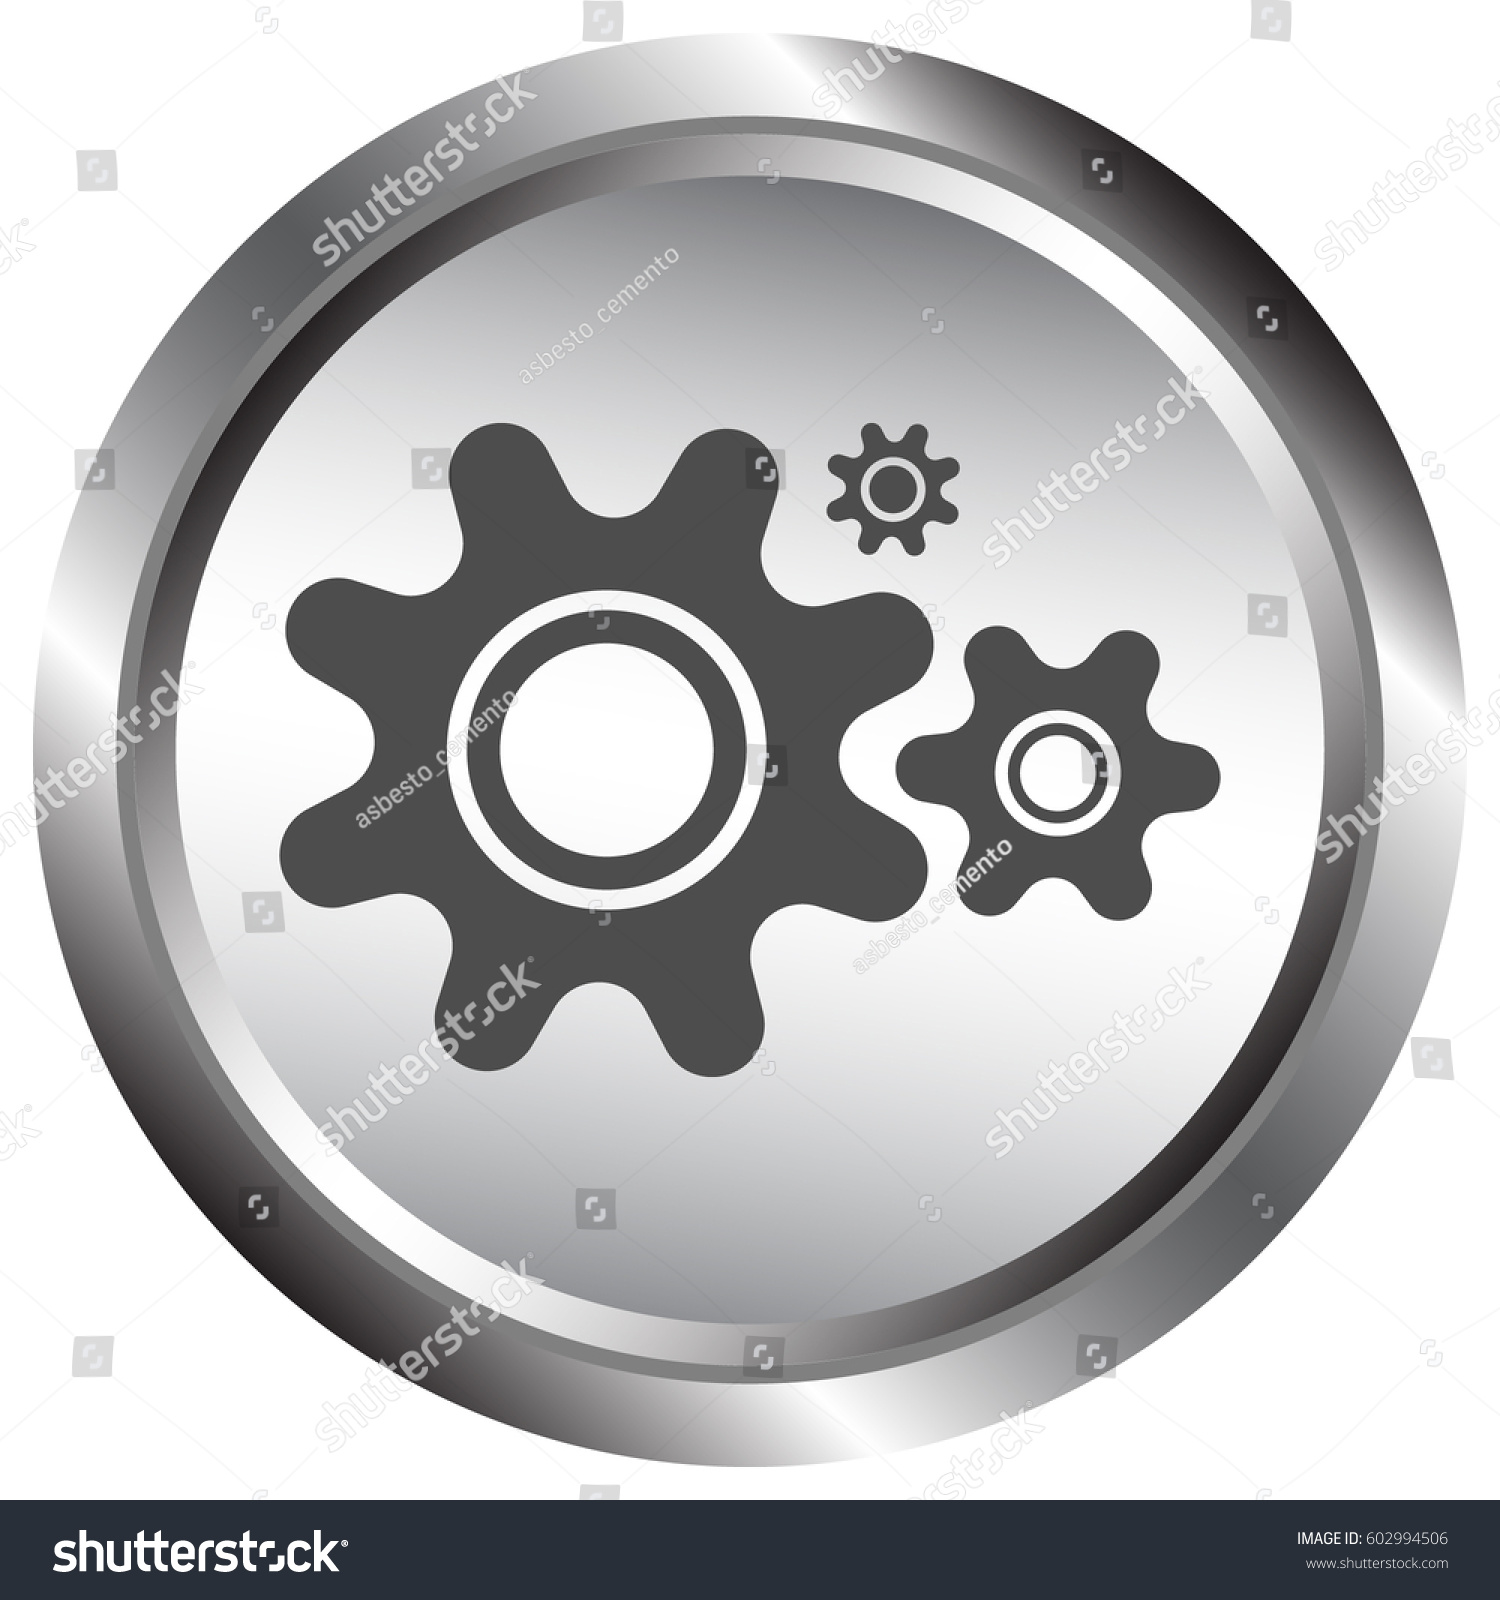 Edit Vectors Free Online - icon of cogwheels. | Shutterstock Editor